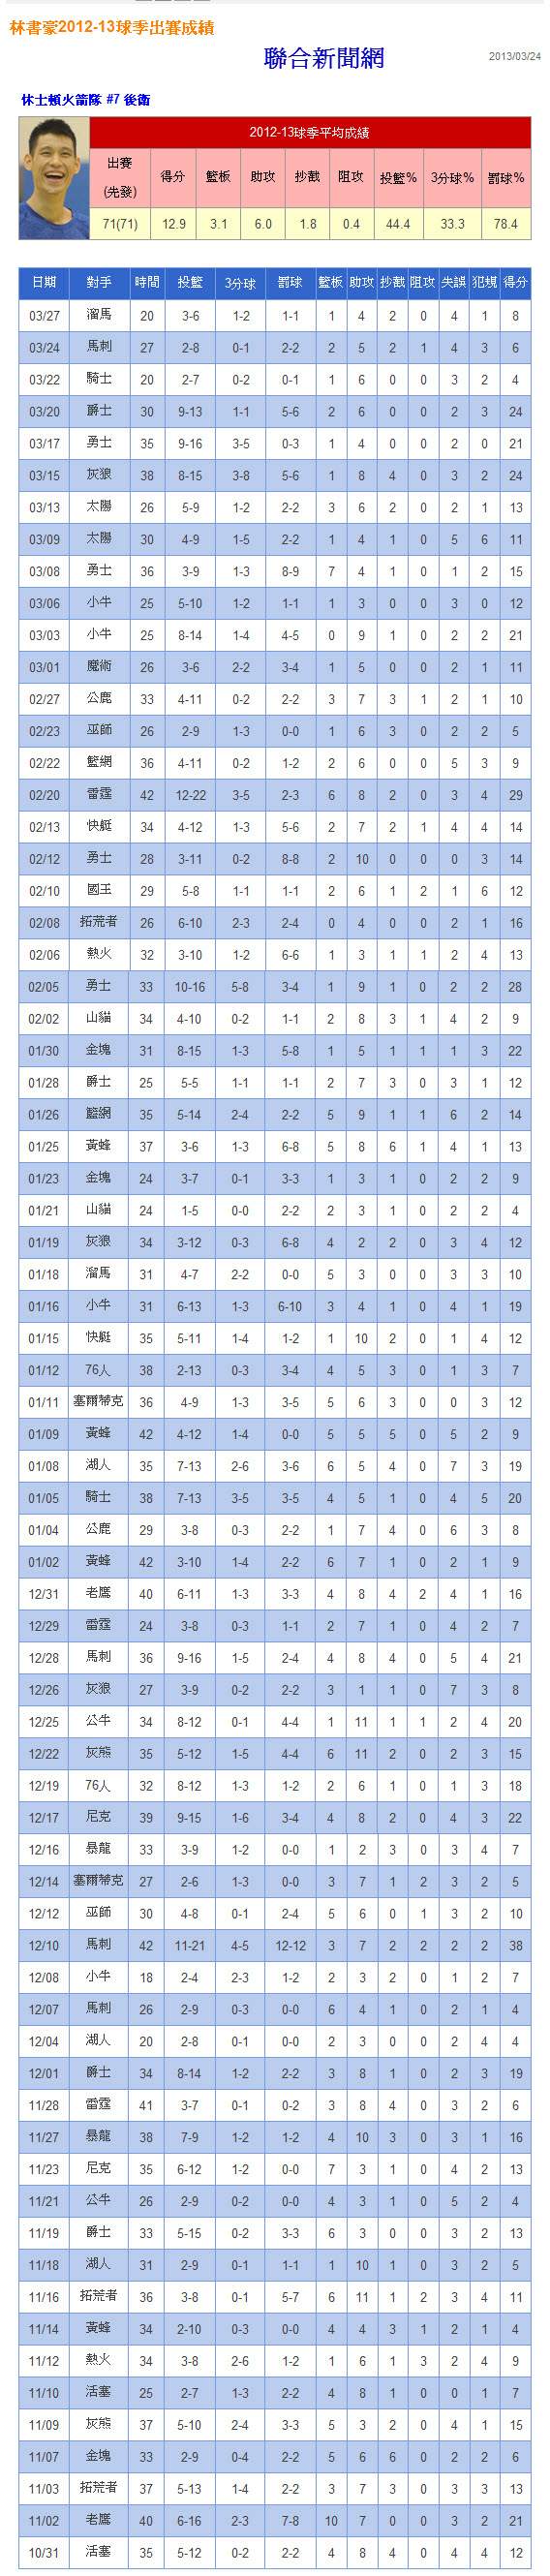 林書豪2012-13球季出賽成績-2013.03.24